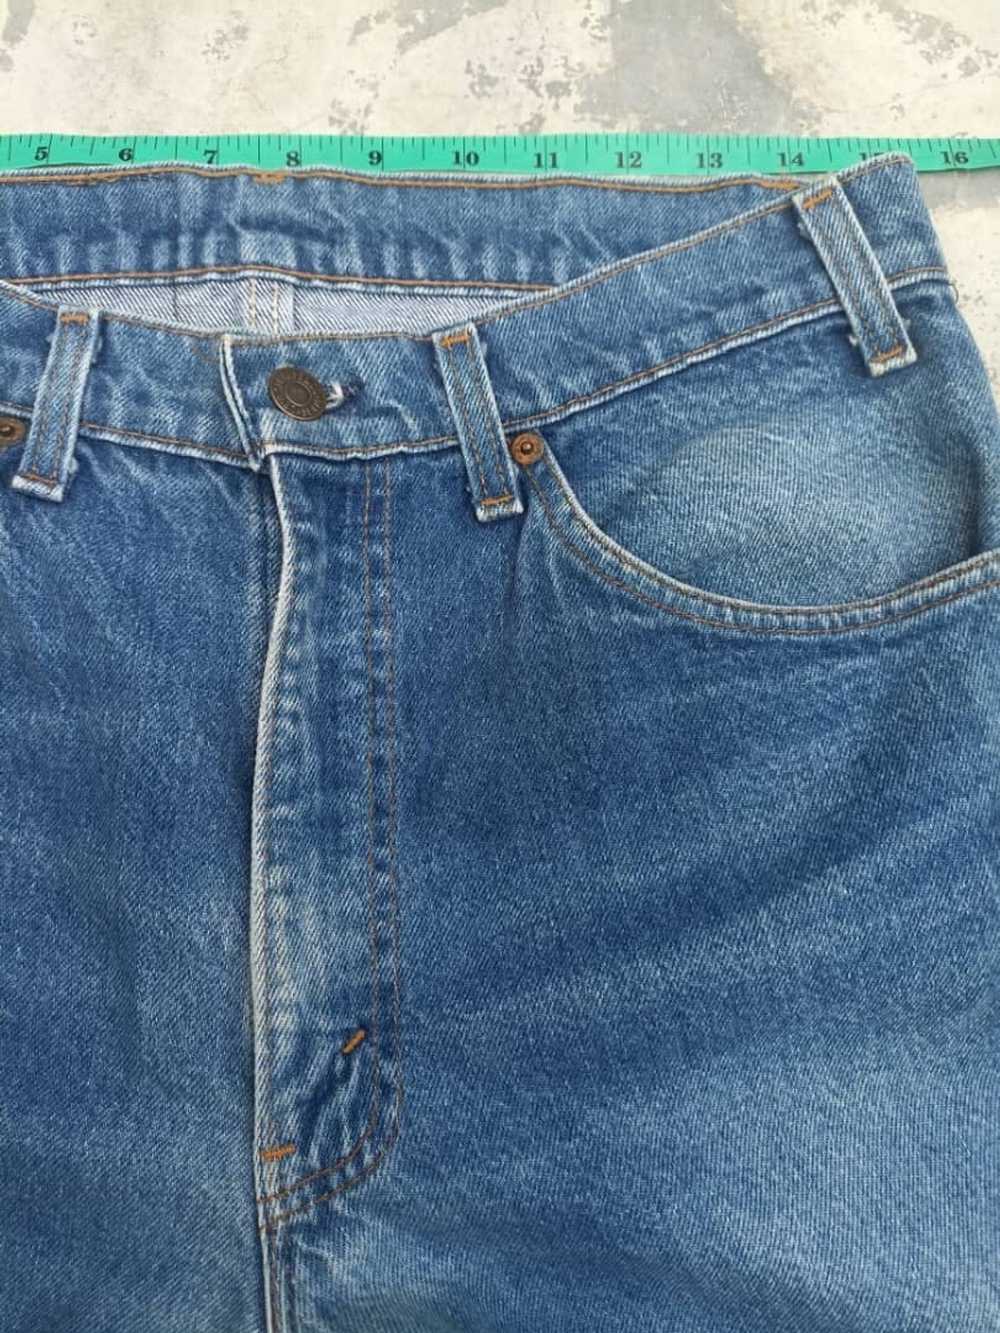 Levi's Vintage Levi's 505 orange tab jeans - image 5